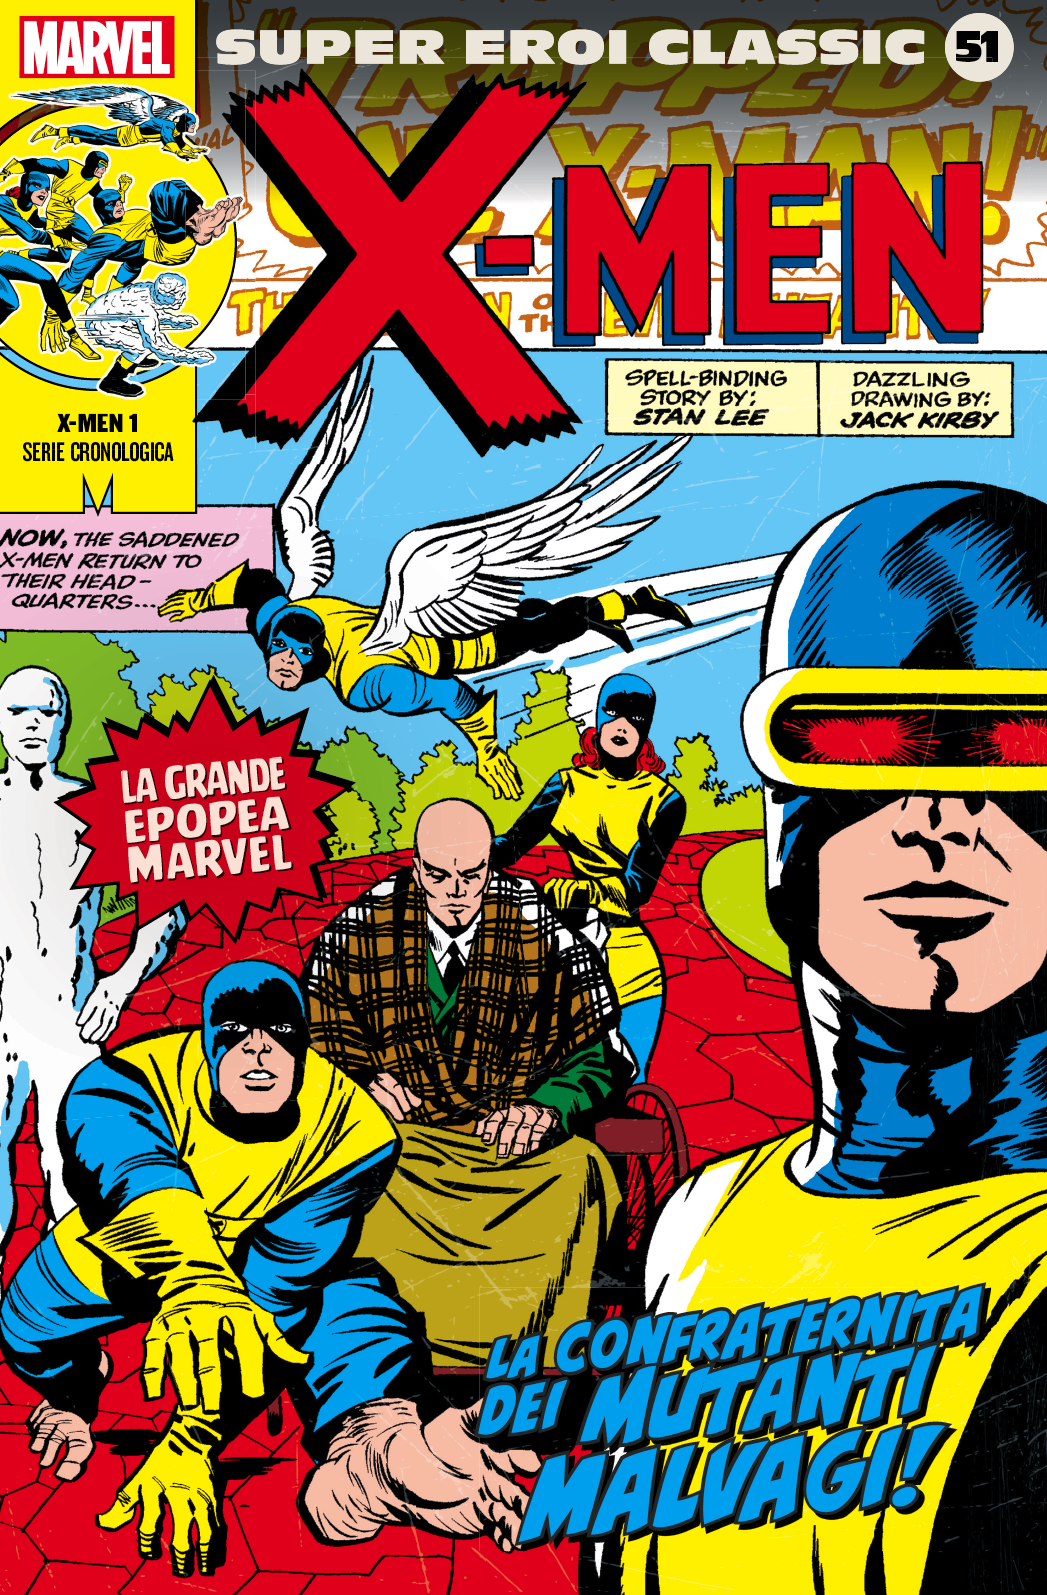 X-Men 1: La confraternita dei mutanti malvagi!